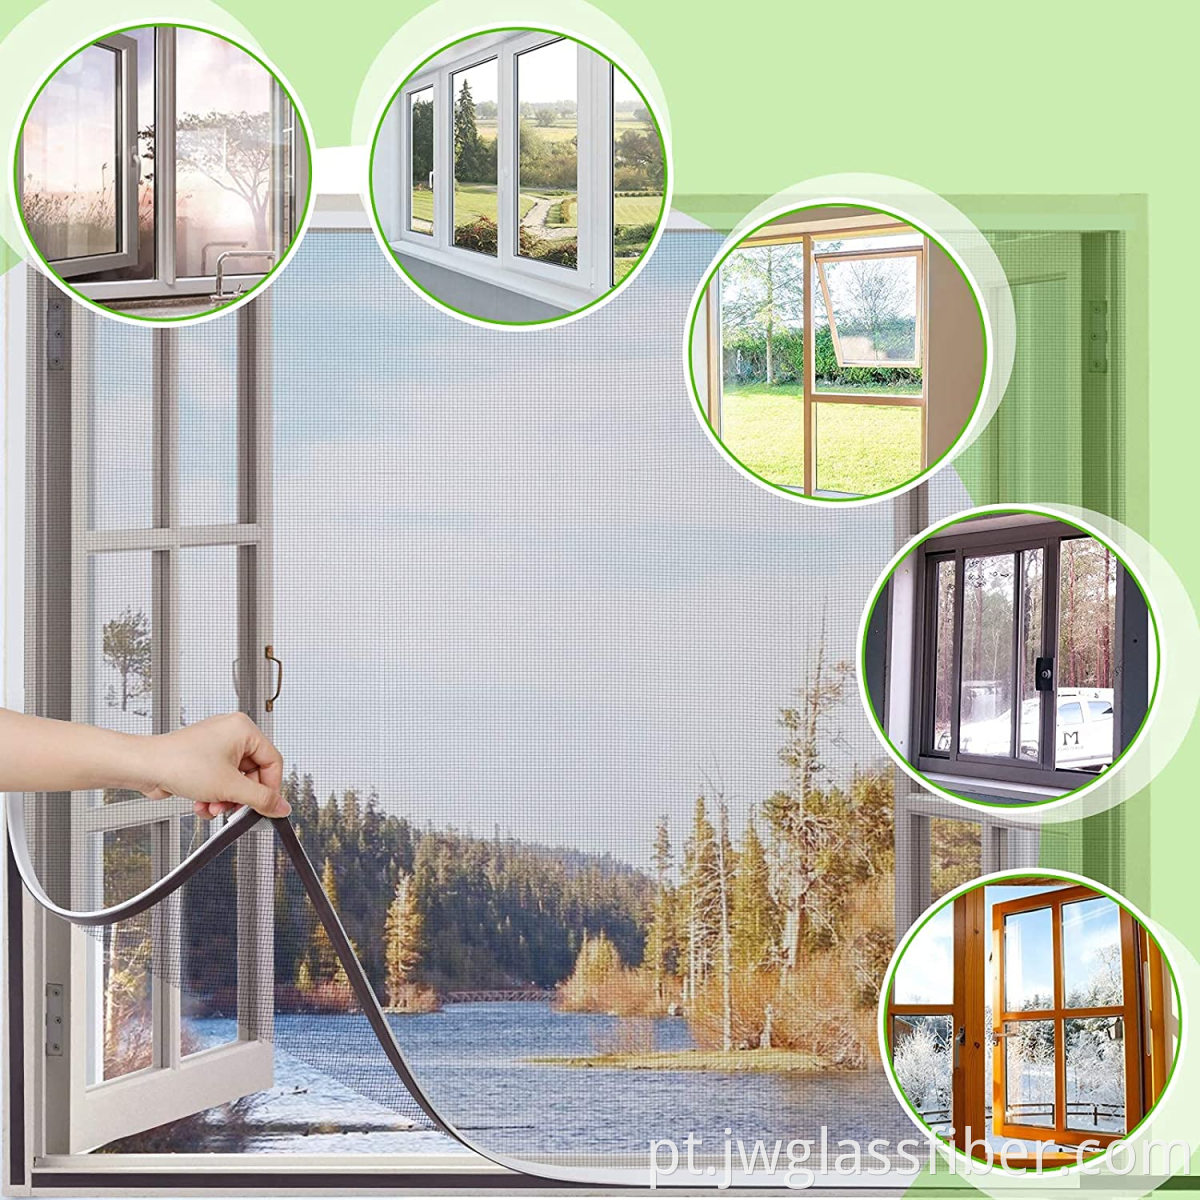 Tela da moda da janela Mosquito magnético DIY para janela 1.3*1,5m Windows Anti -Mosquito Tela da janela